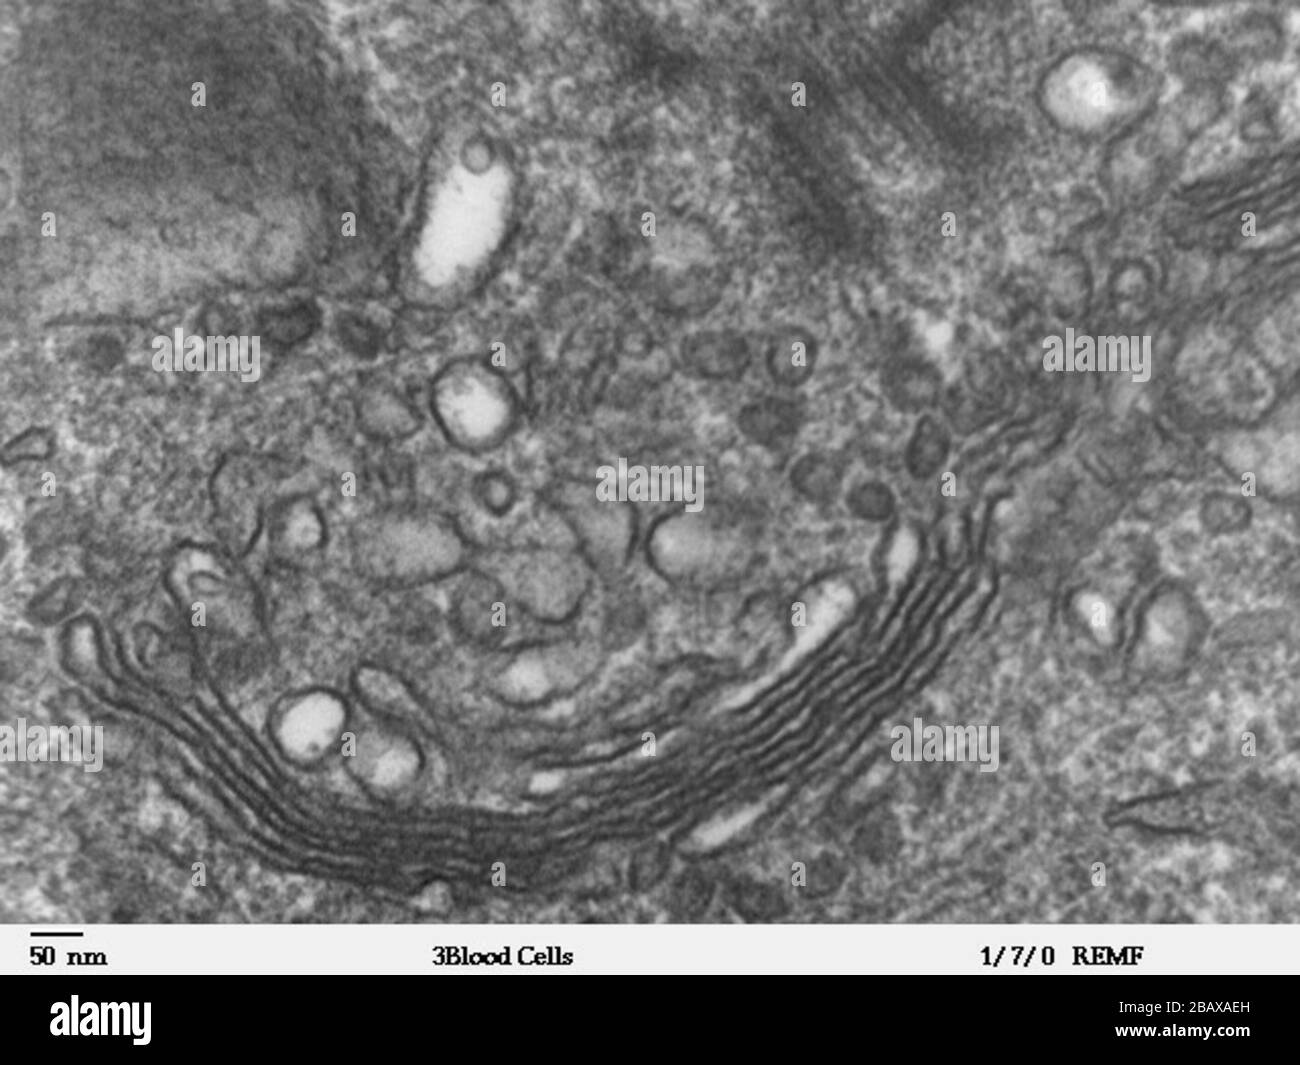 Cliente principal enseñar Imagen de microscopio electrónico de transmisión de gran aumento de un  leucocito humano, mostrando golgi, que es una estructura involucrada en el  transporte de proteínas en el citoplasma de la célula. JEOL